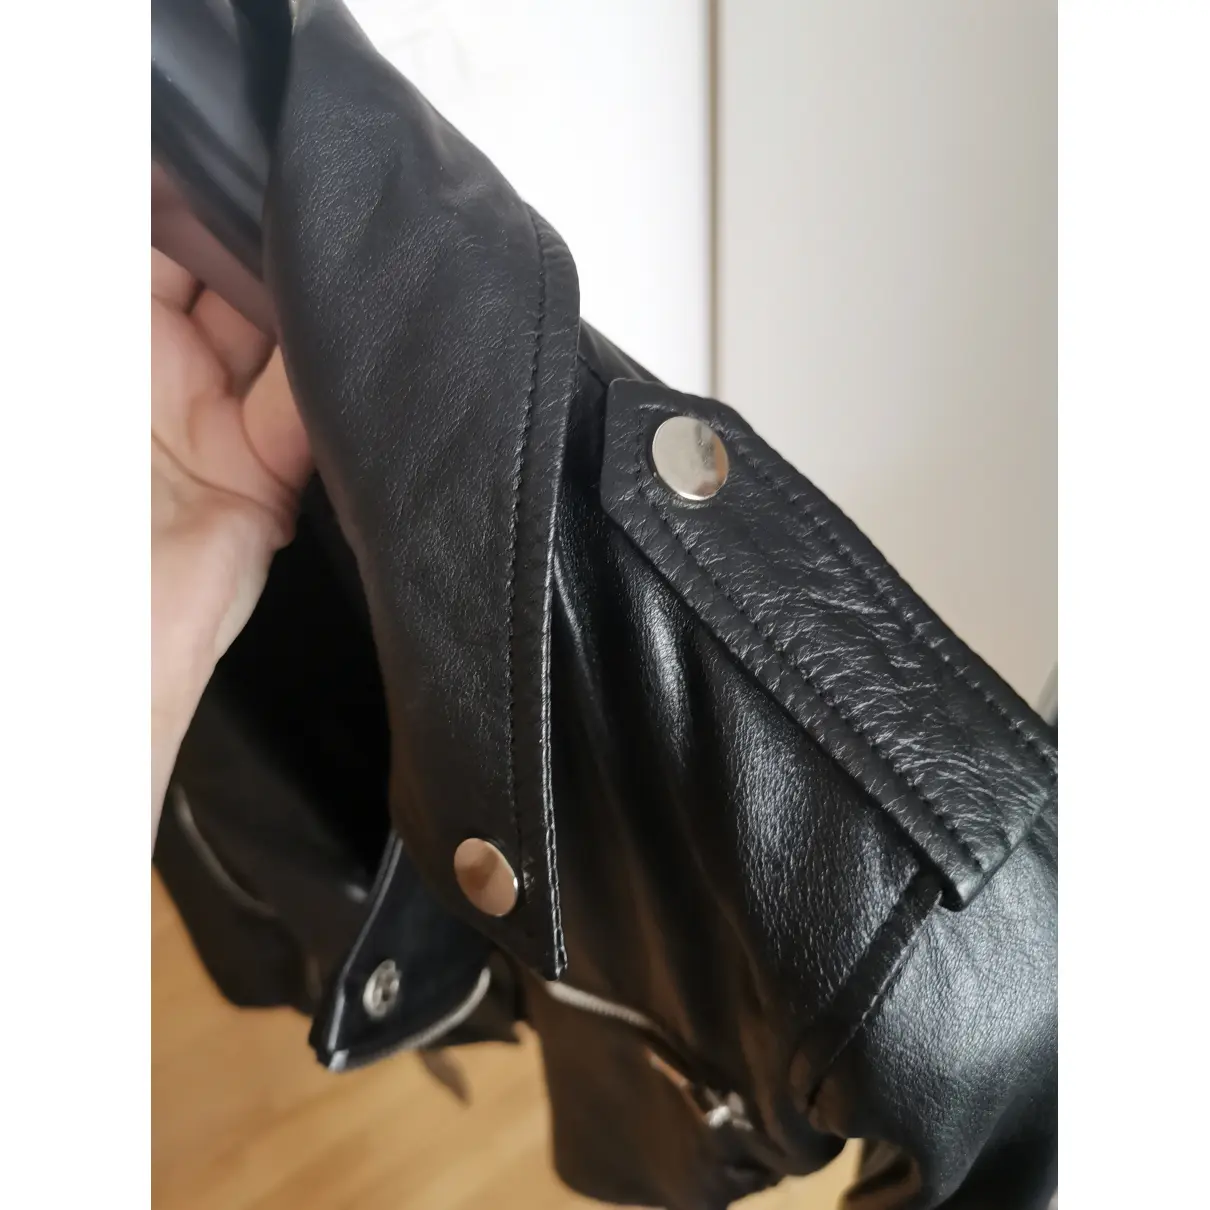 Leather jacket Barneys